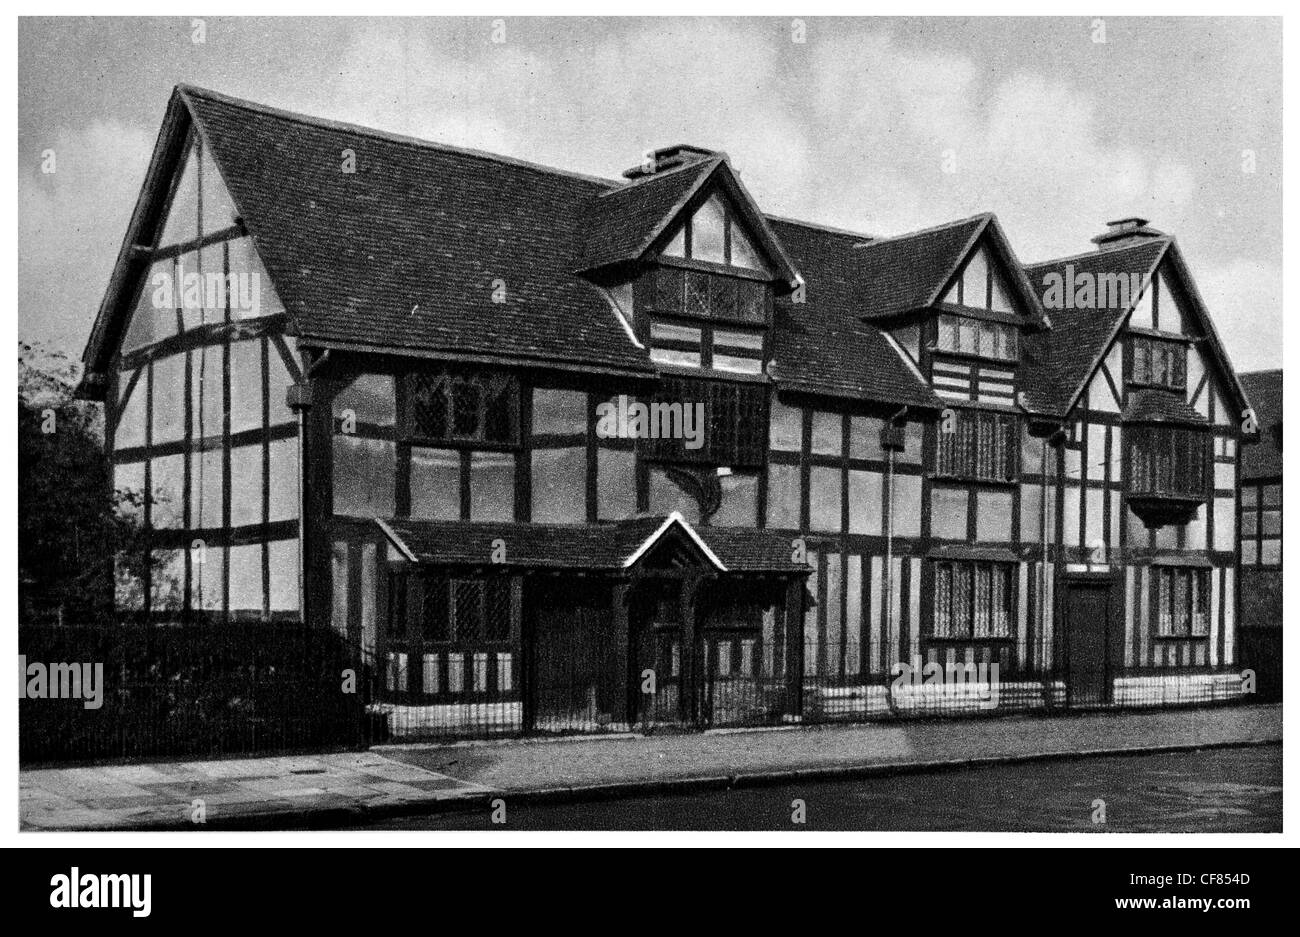 William Shakespeares Geburtsort Vertrauen Stratford-upon-Avon Nationaldenkmal 1930 Warwick Warwickshire West Midlands England UK Stockfoto